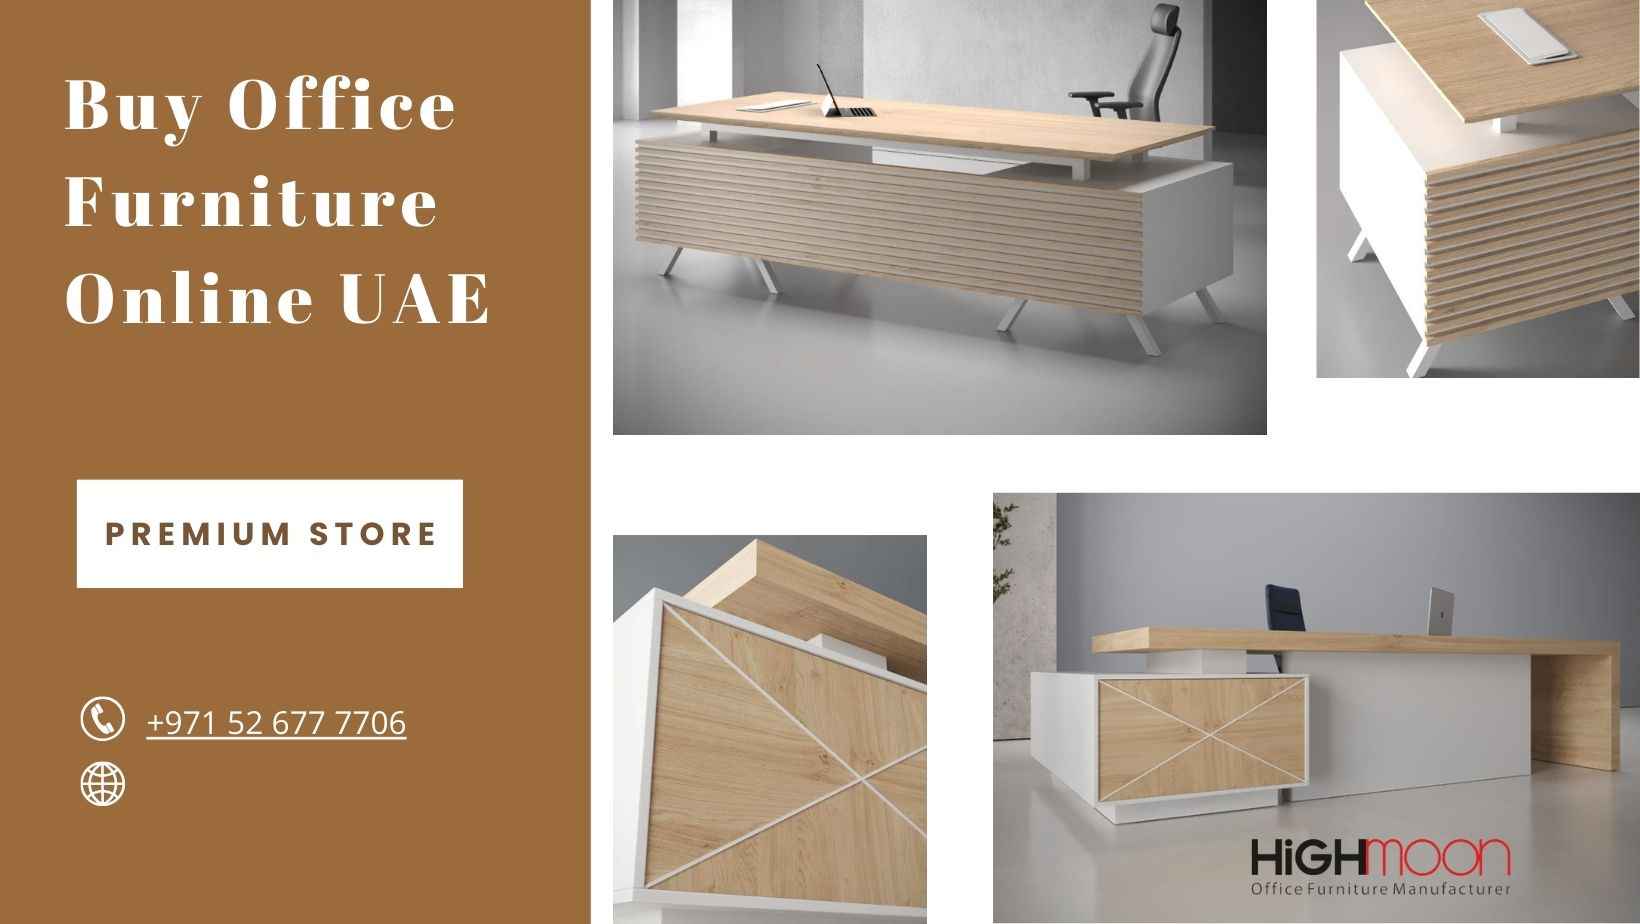 Buy Office Furniture Online UAE